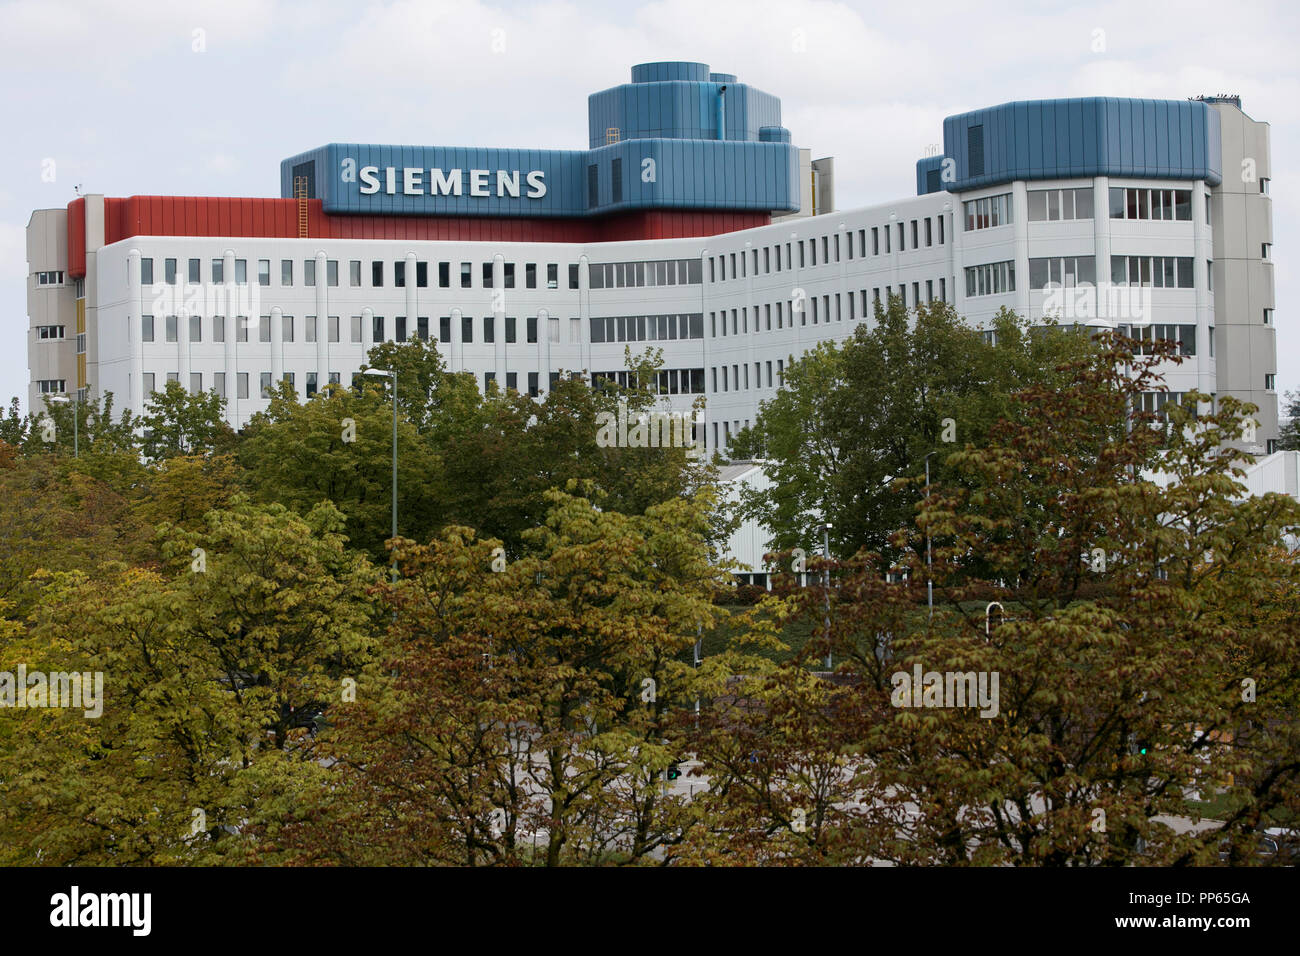 Un logo affiche à l'extérieur d'un établissement occupé par Siemens AG à Munich, Allemagne, le 8 septembre 2018. Banque D'Images